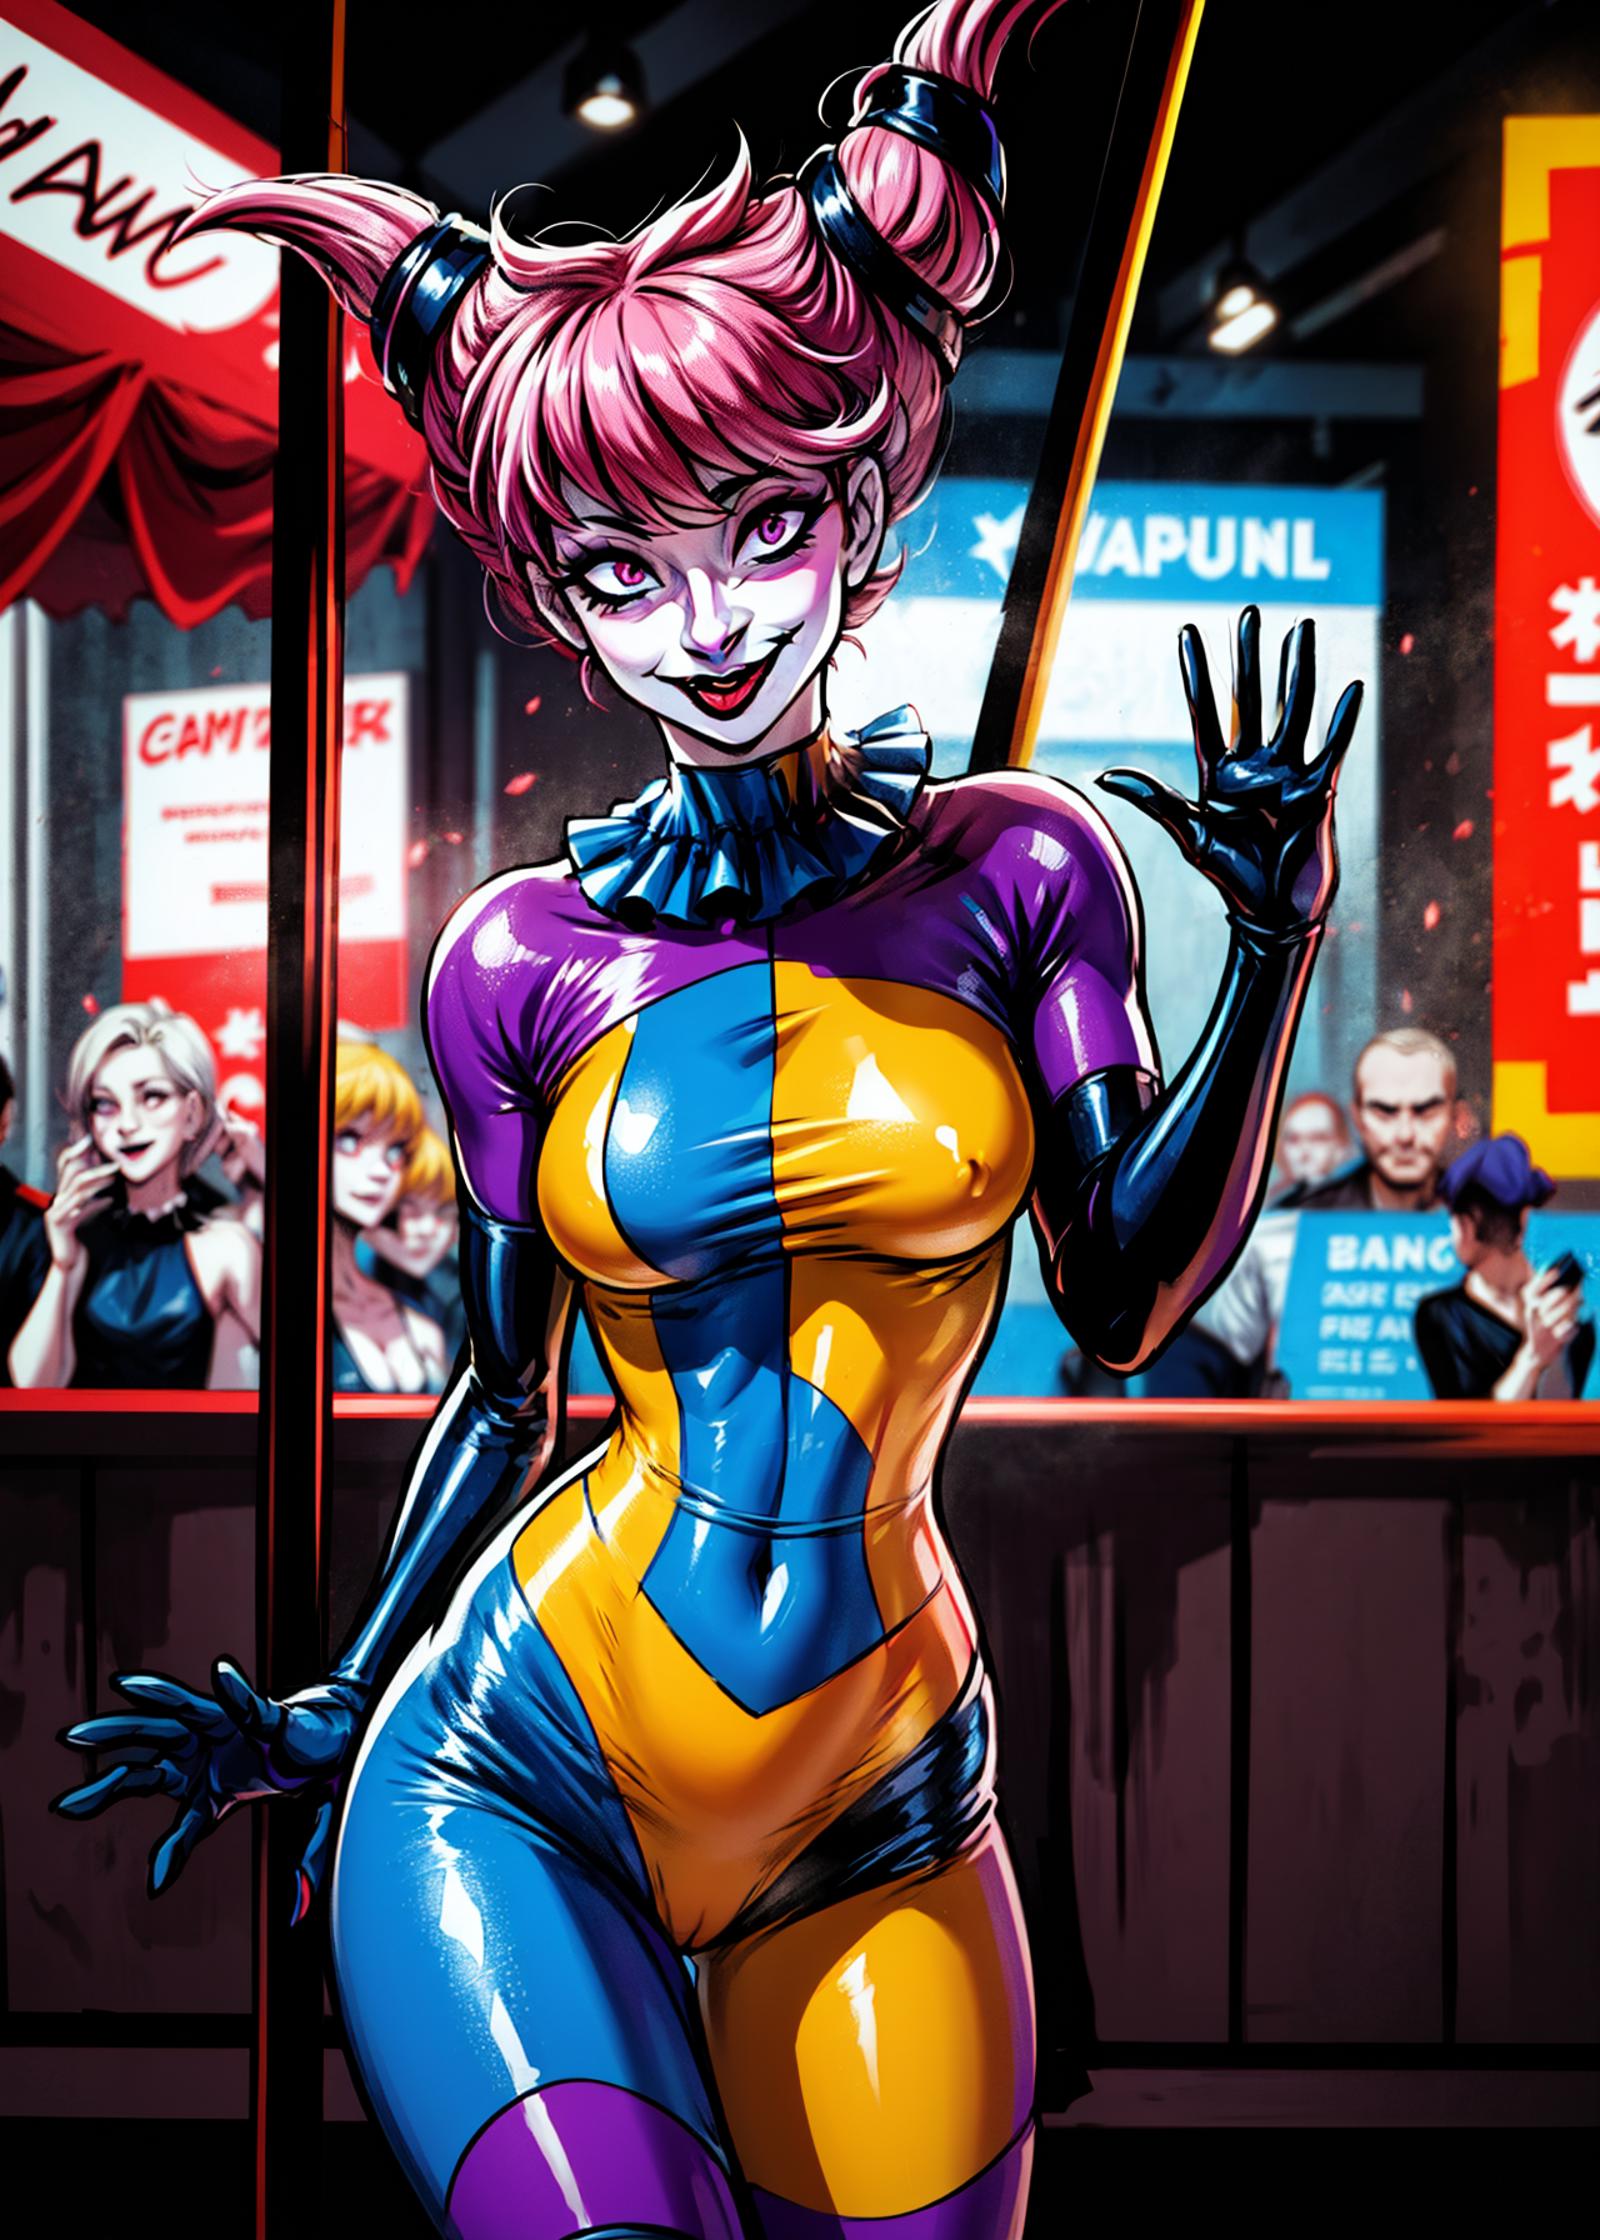 Jinx (Teen Titans) LoRA image by novelProphet